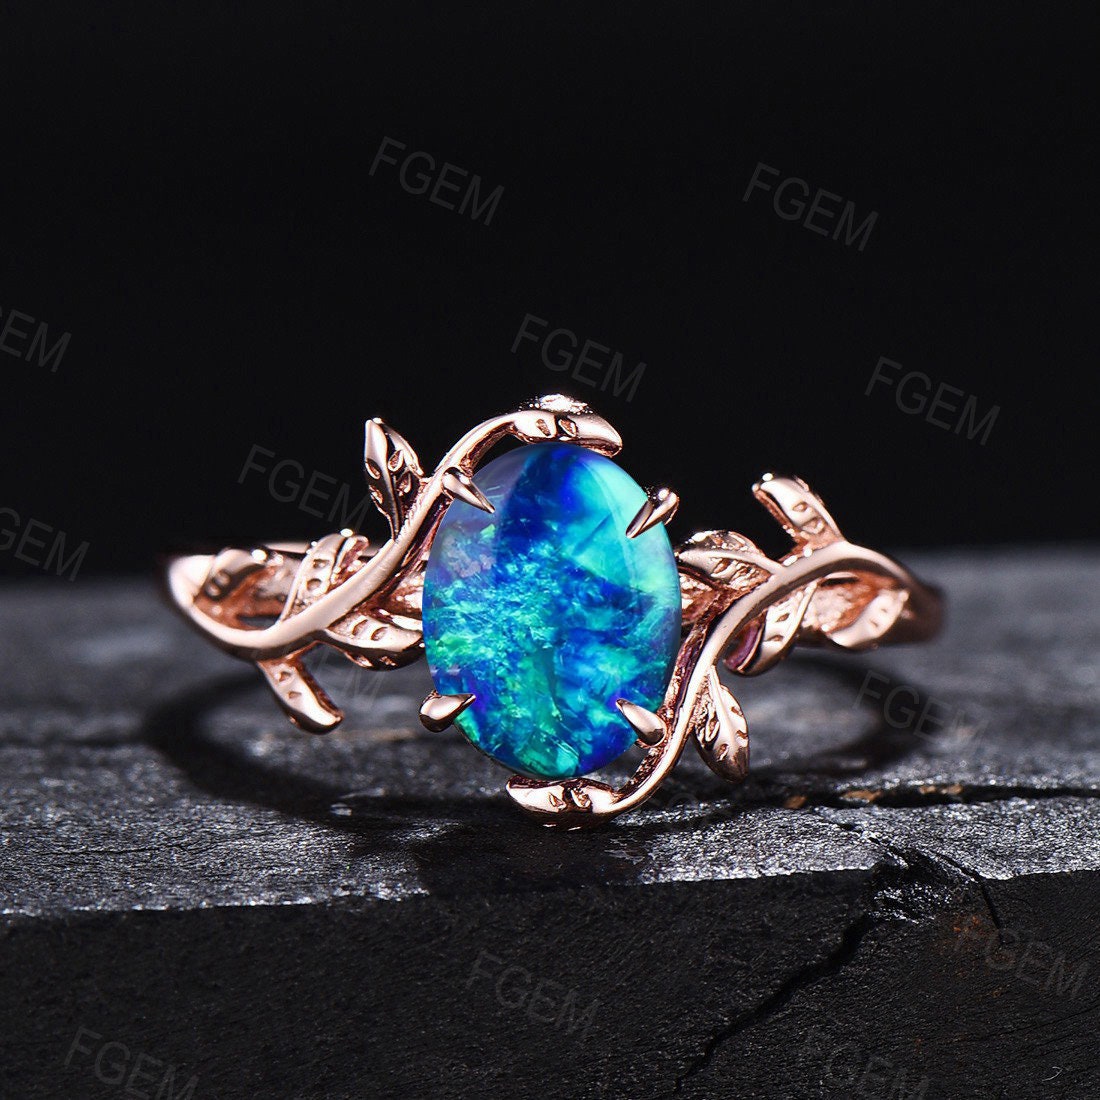 Sterling Silver Blue Opal Ring Fire Opal Jewelry 1.5ct Oval Cut Dainty